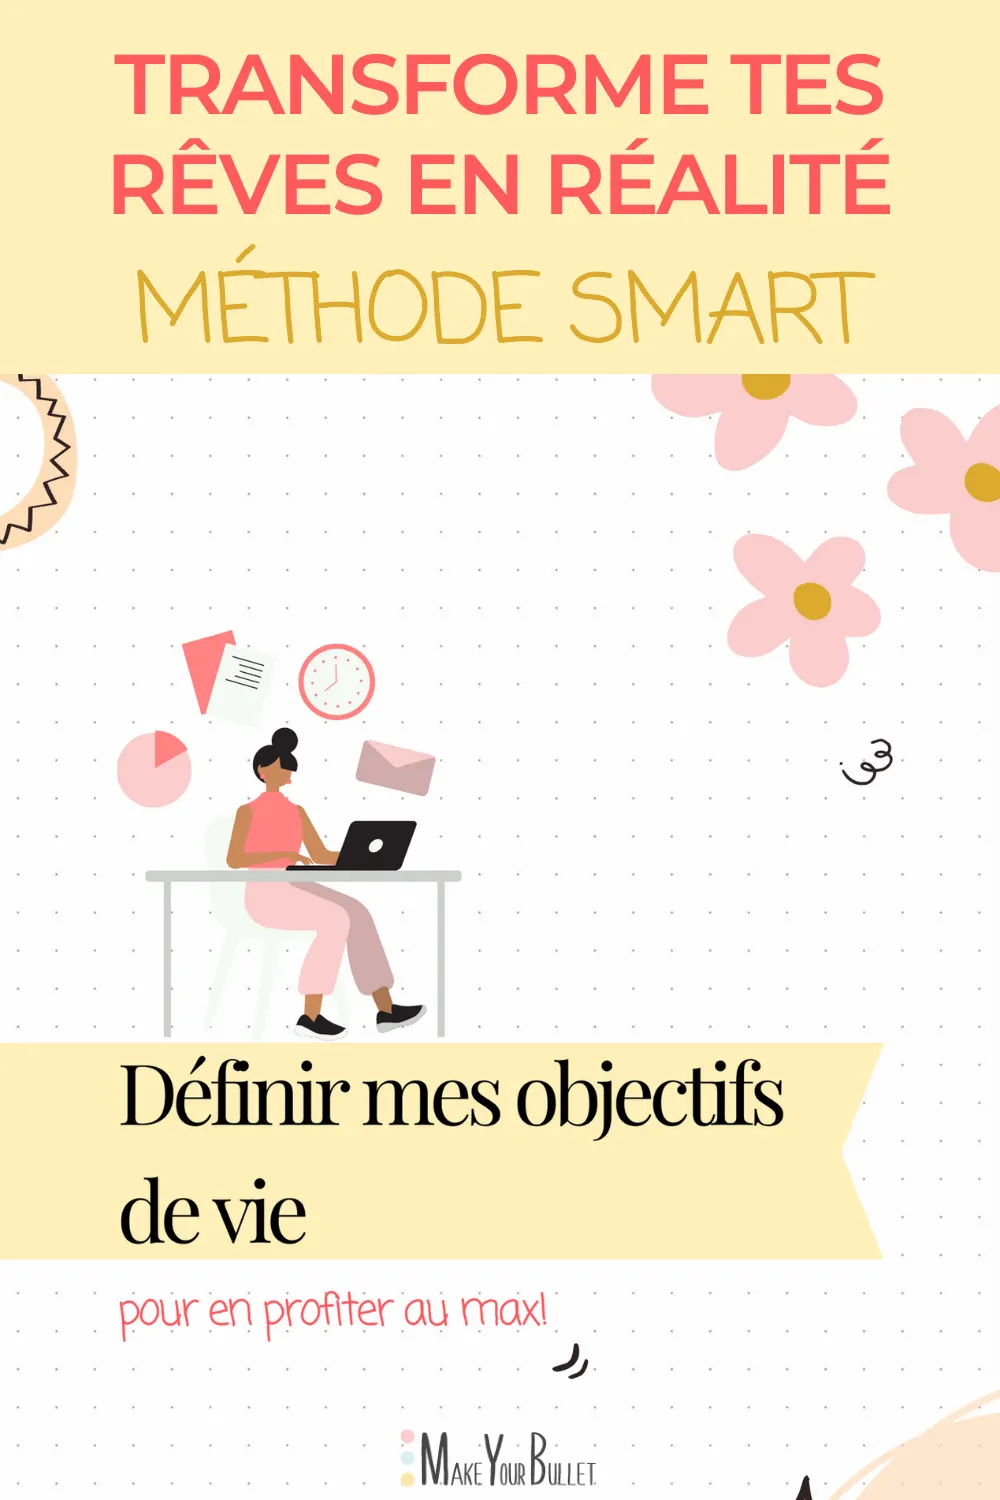 methode-smart-blog-make-your-bullet-workbook